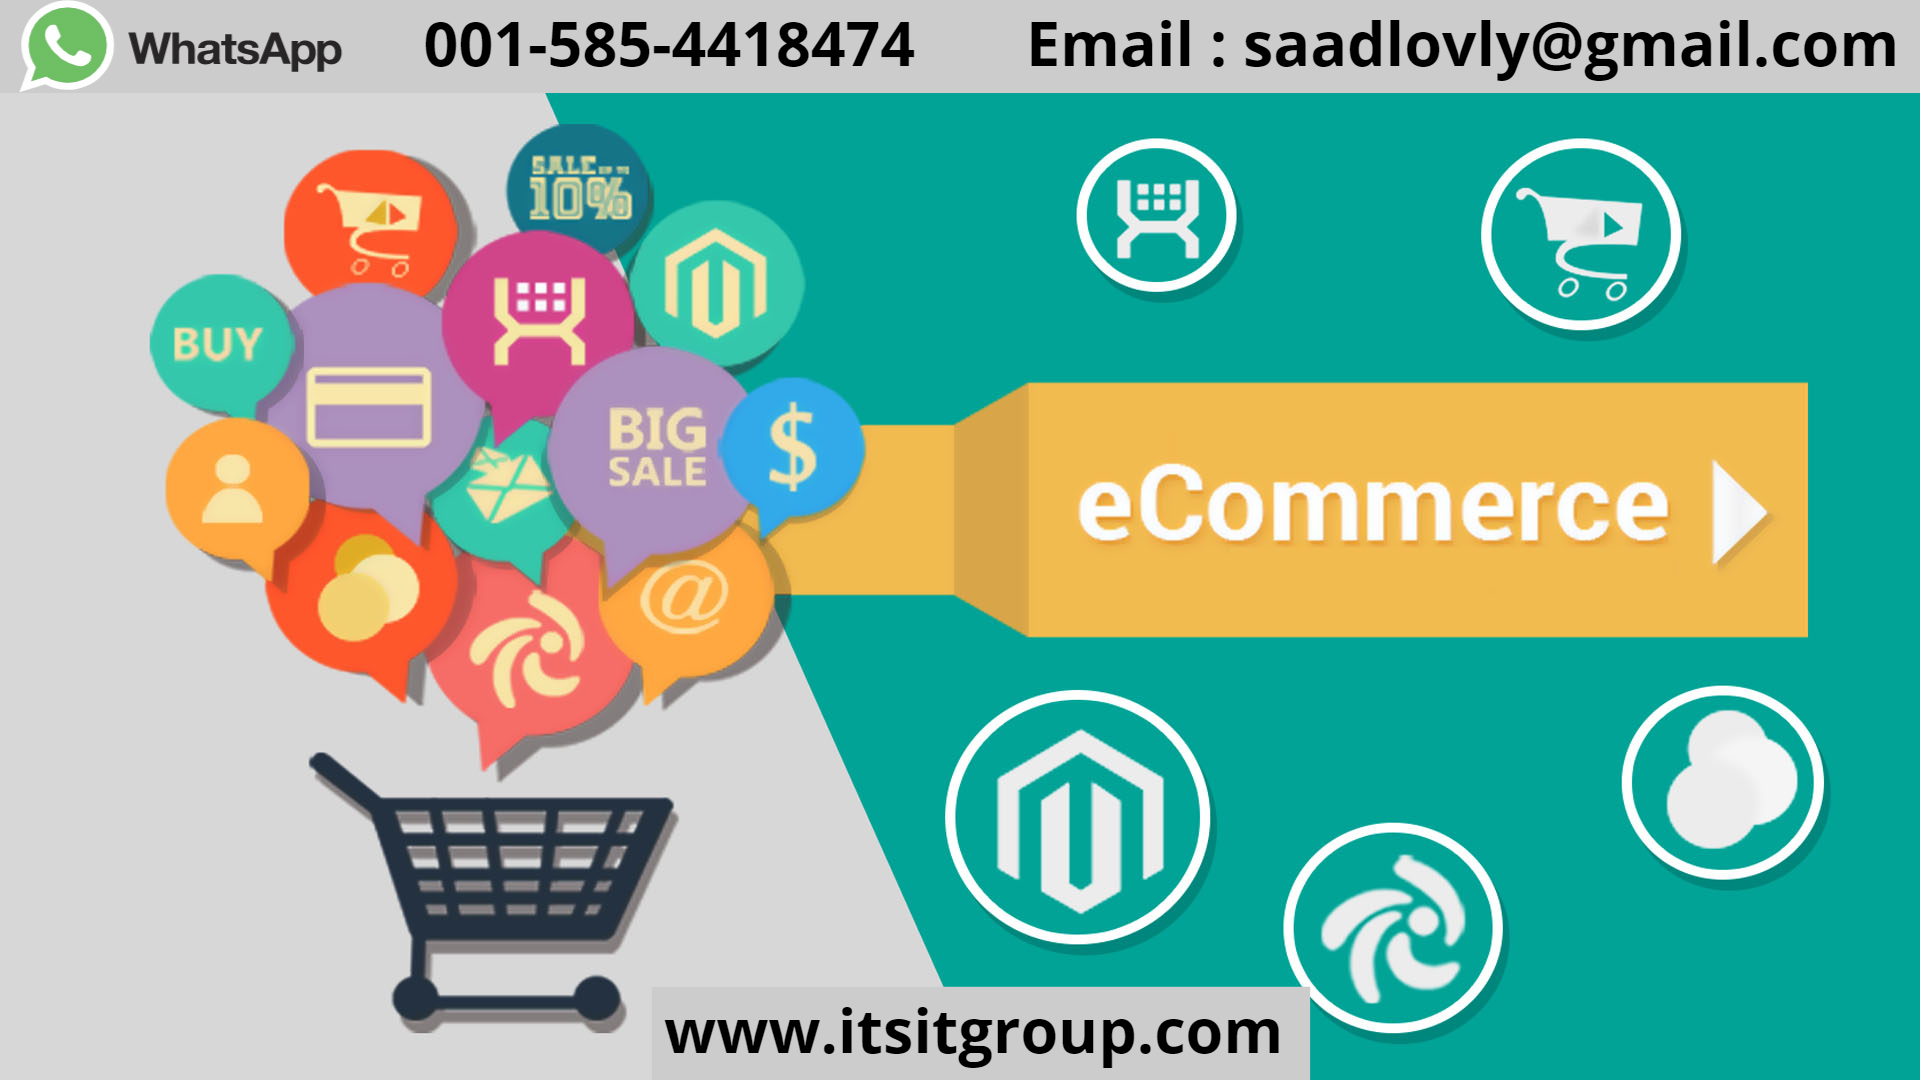 web development ecommerce